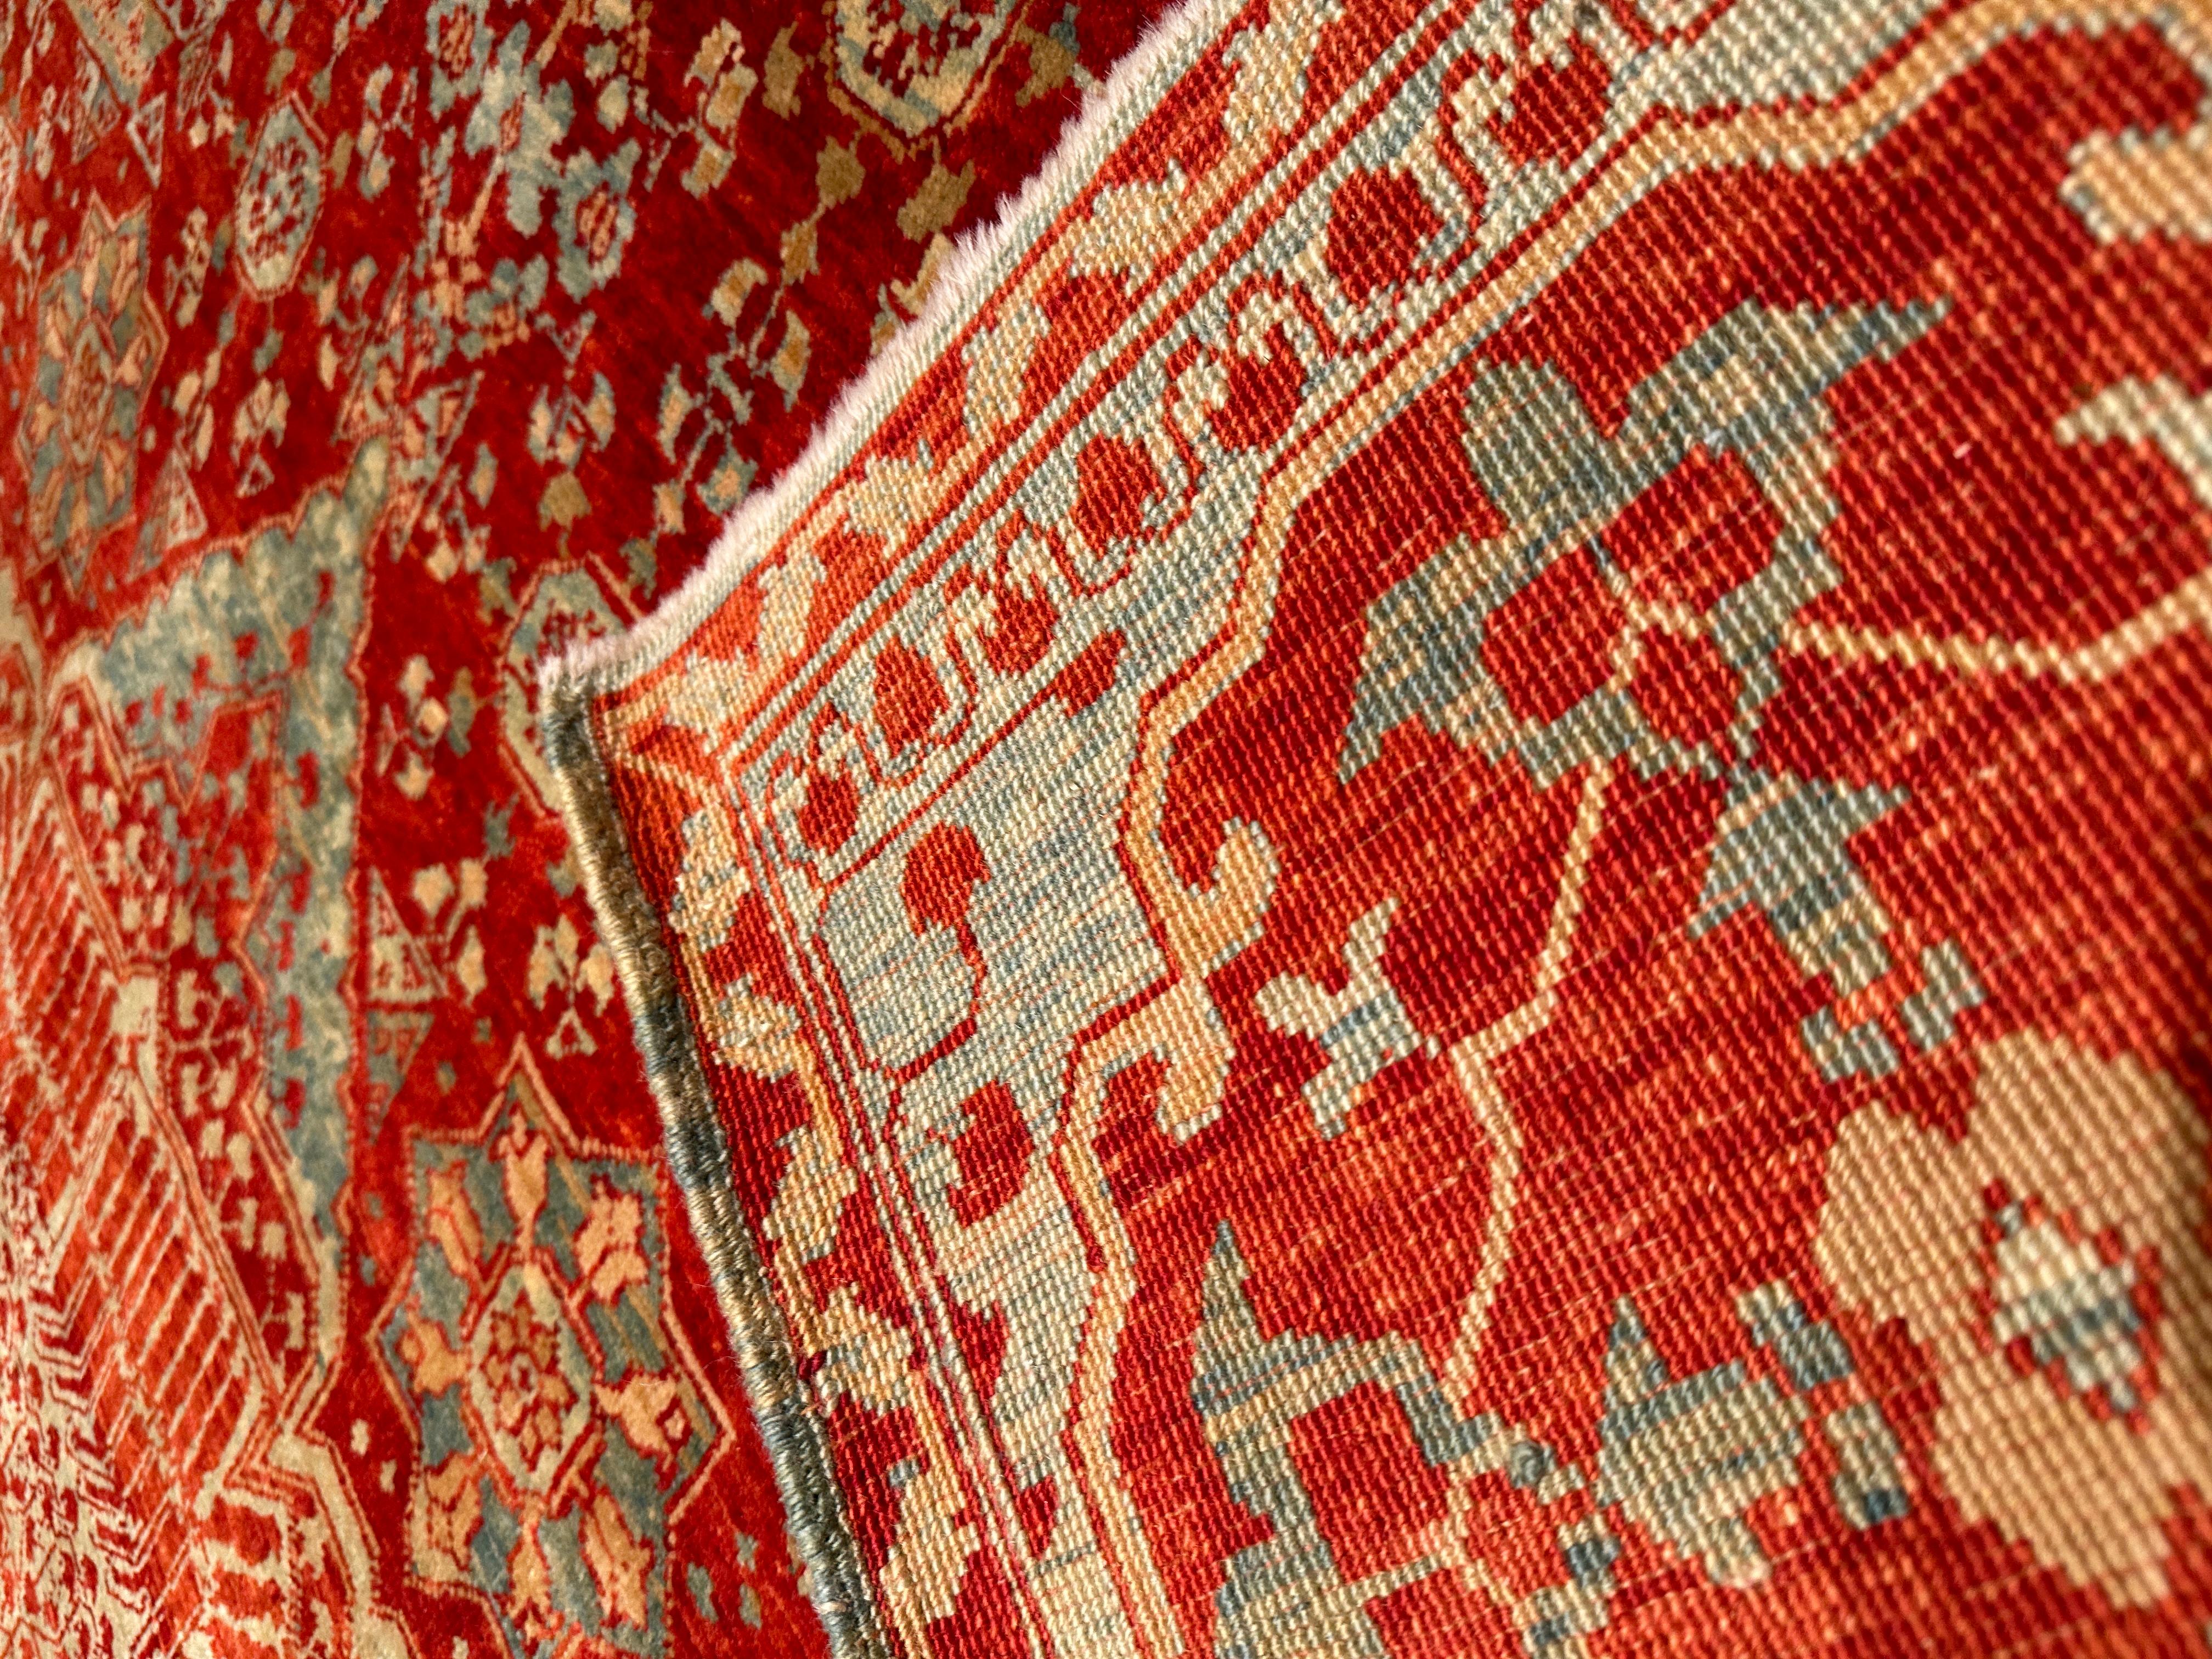 Die Quelle des Teppichs stammt aus dem Buch How to Read - Islamic Carpets, Walter B. Denny, The Metropolitan Museum of Art, New York 2014 Abb.61,62. Der Fünf-Sterne-Medaillon-Teppich wurde im frühen 16. Jahrhundert vom Mamluken-Sultan von Kairo,